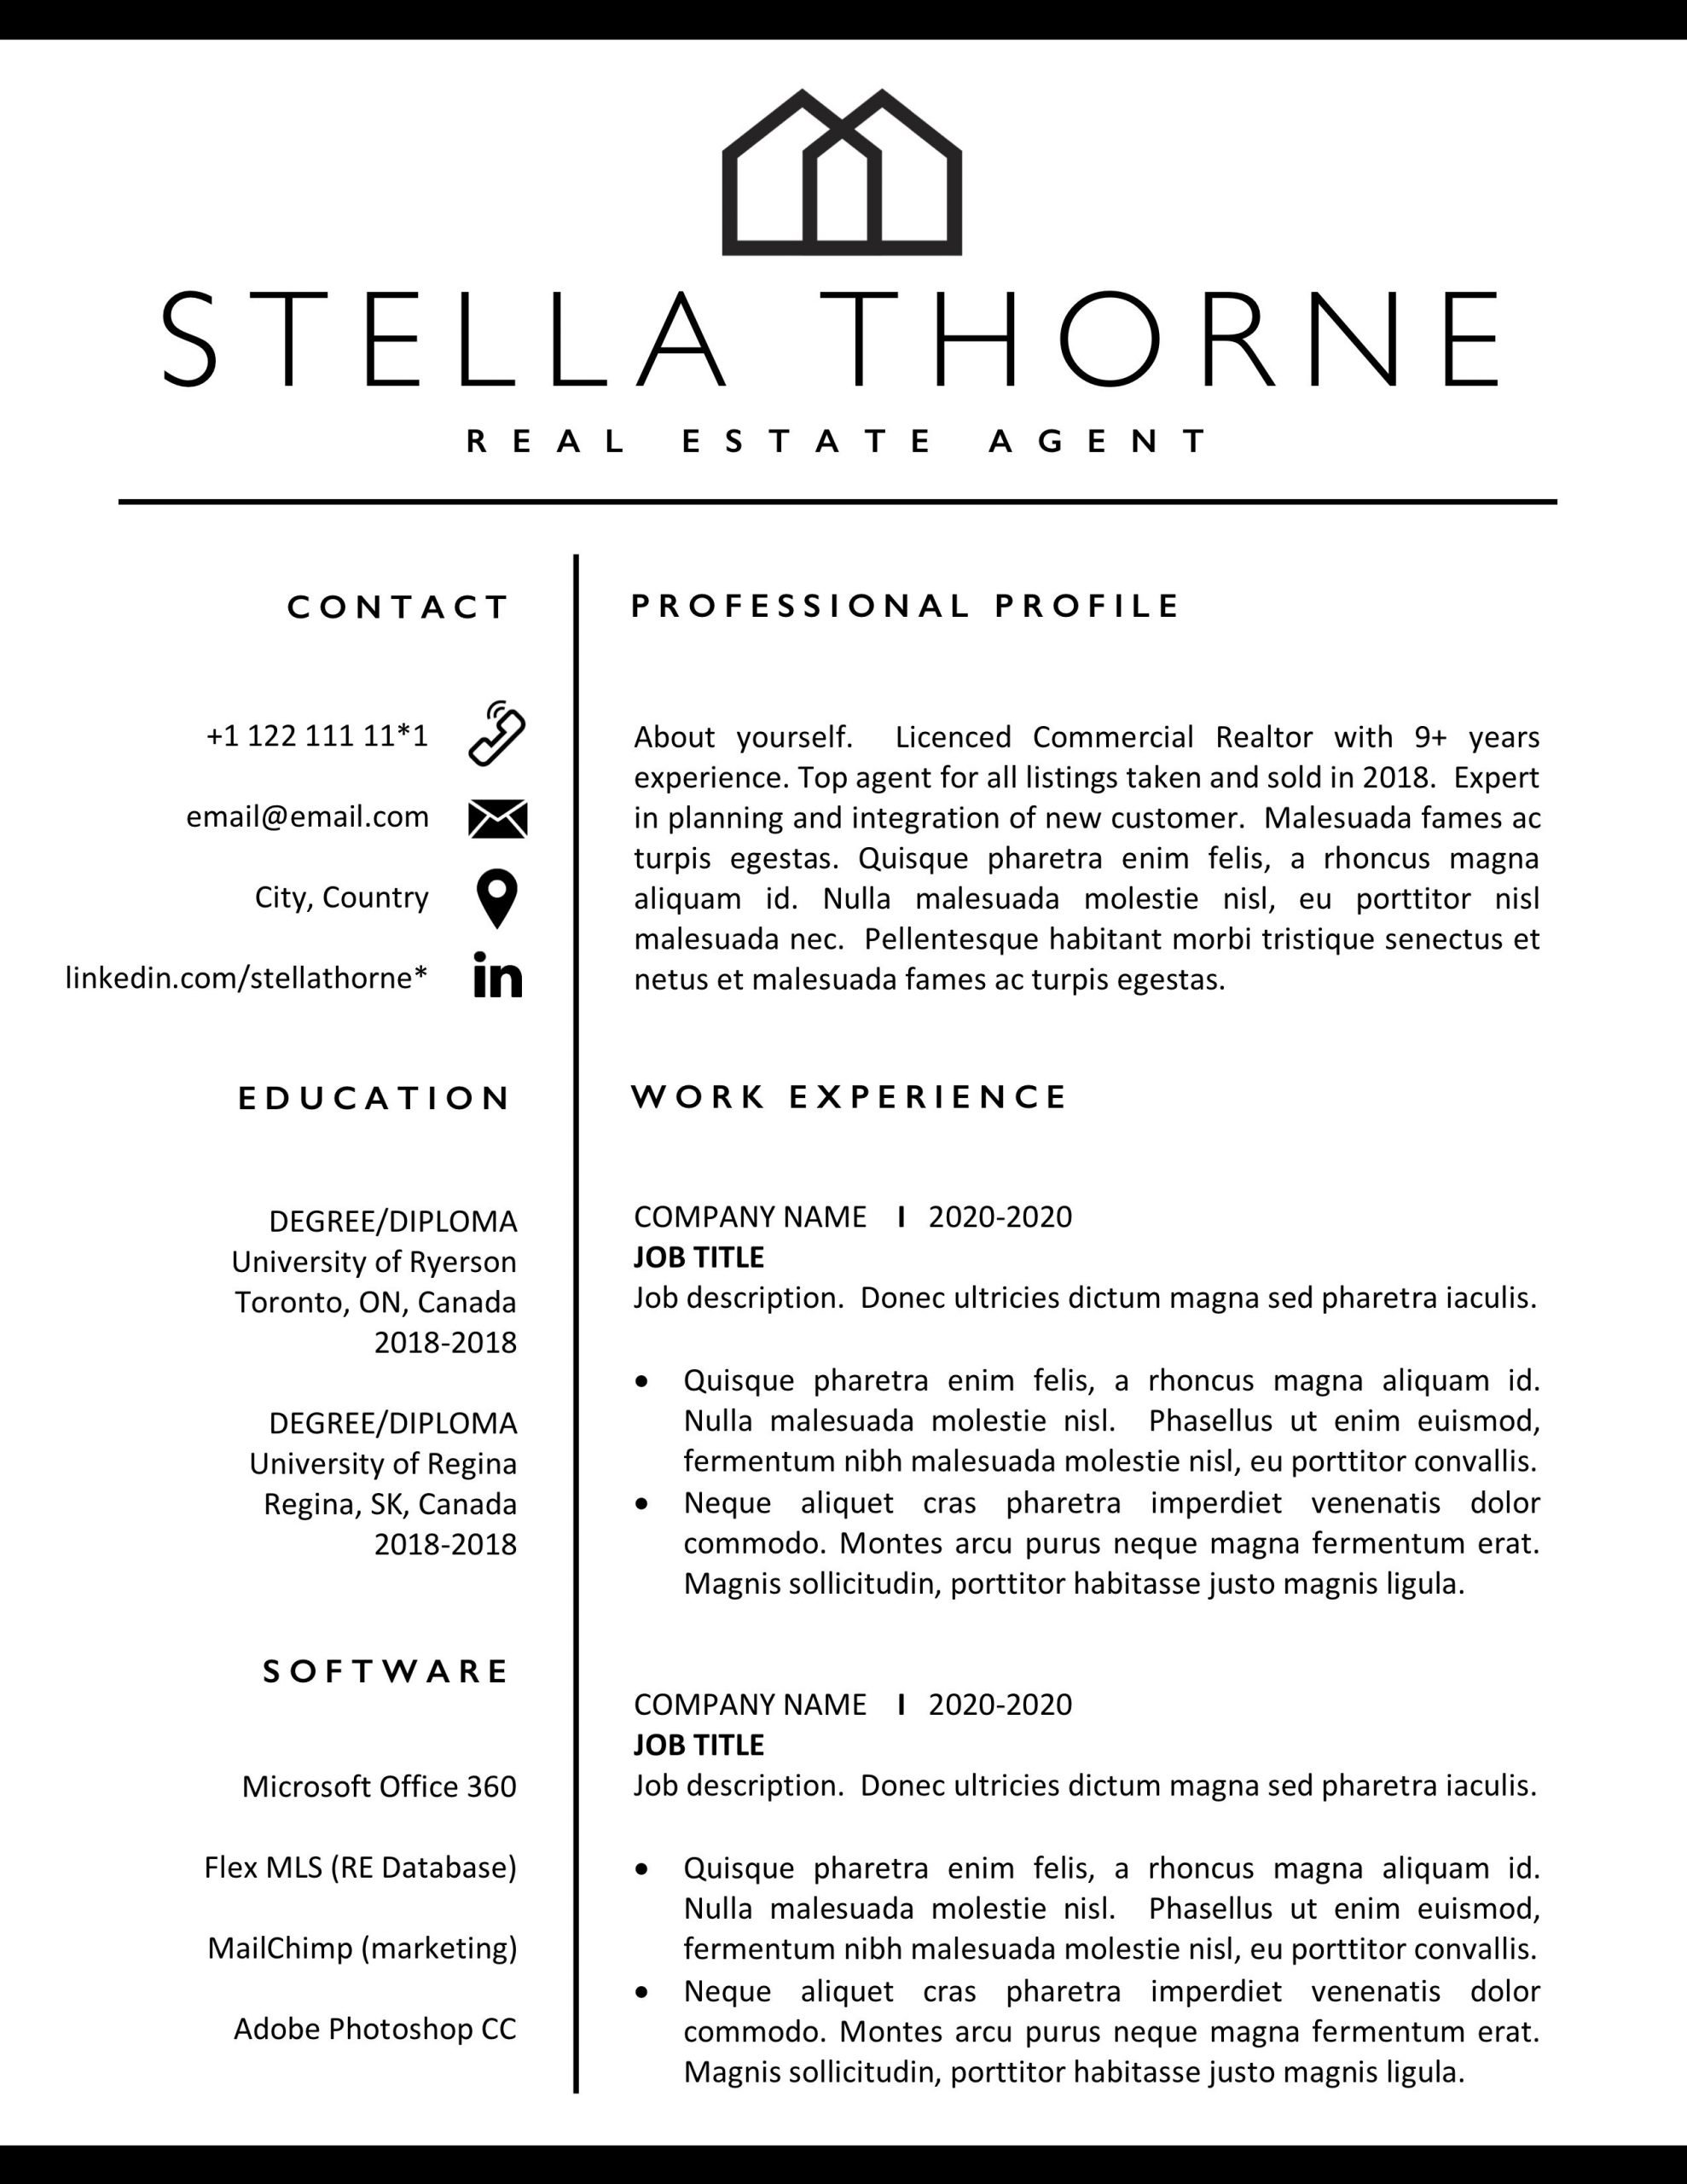 Resume Format For Real Estate Job